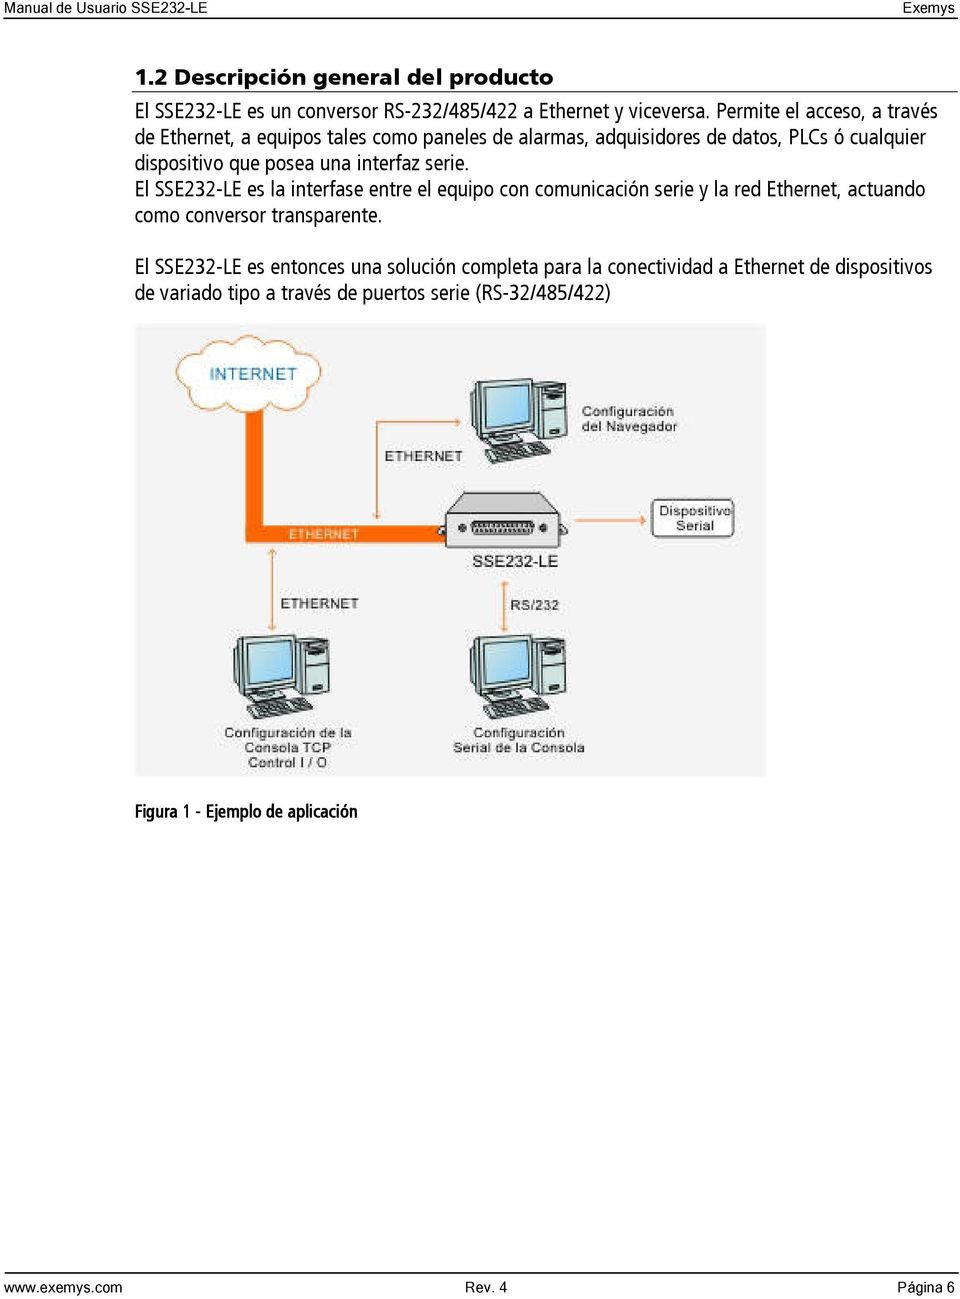 una interfaz serie. El es la interfase entre el equipo con comunicación serie y la red Ethernet, actuando como conversor transparente.